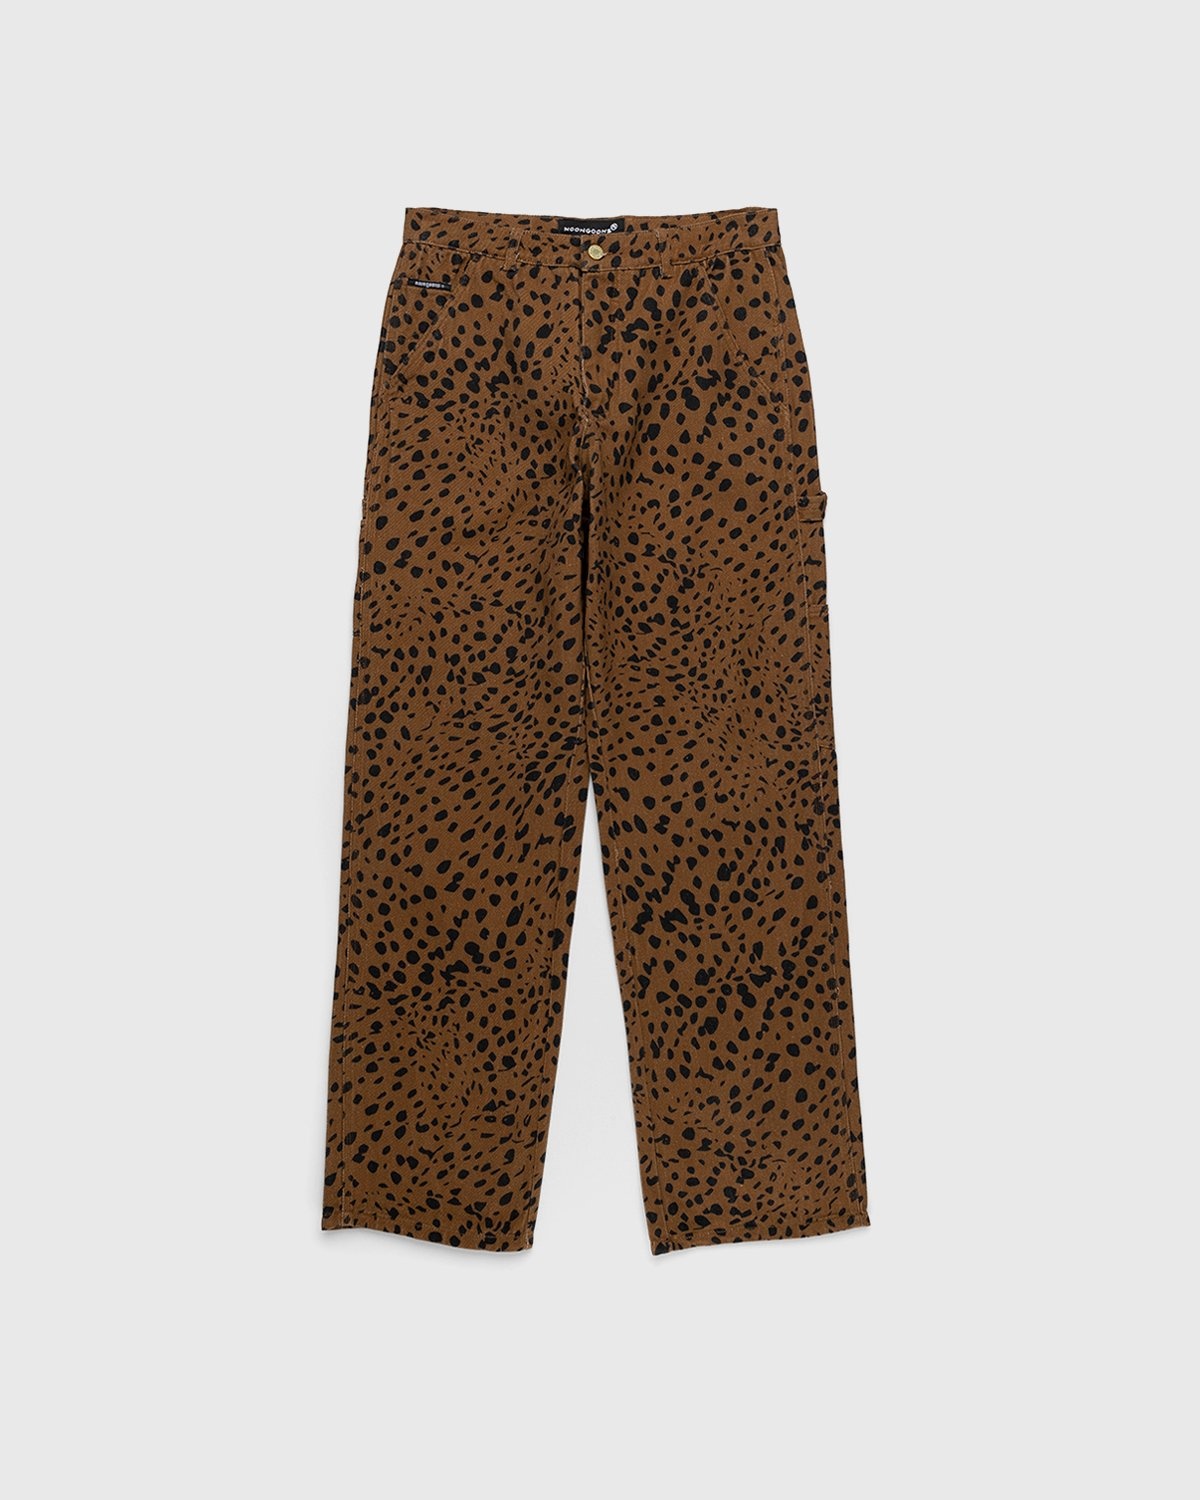 Noon Goons – Go Leopard Denim Pant Brown - Pants - Brown - Image 1